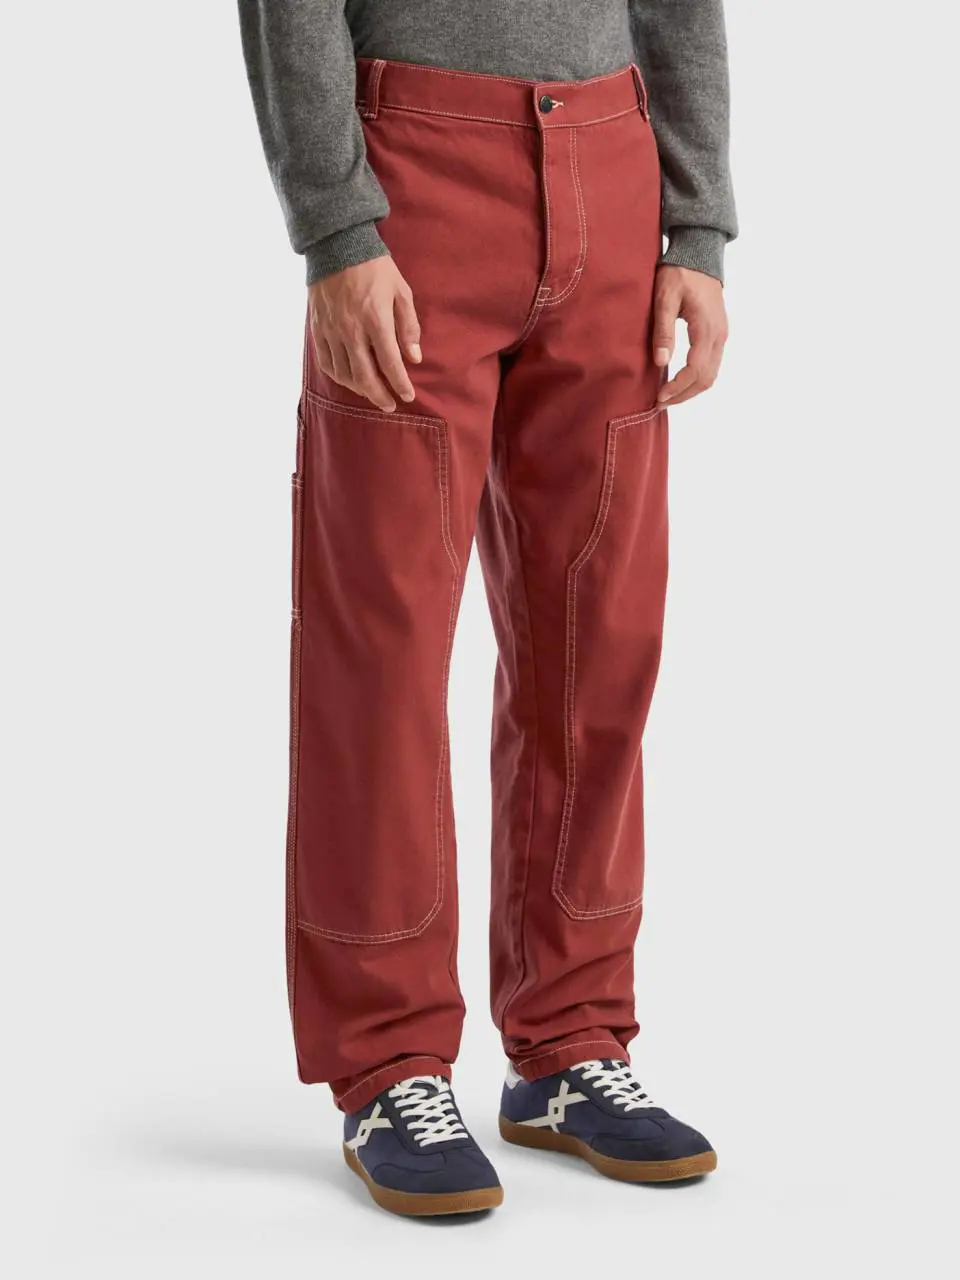 Benetton cotton canvas trousers. 1